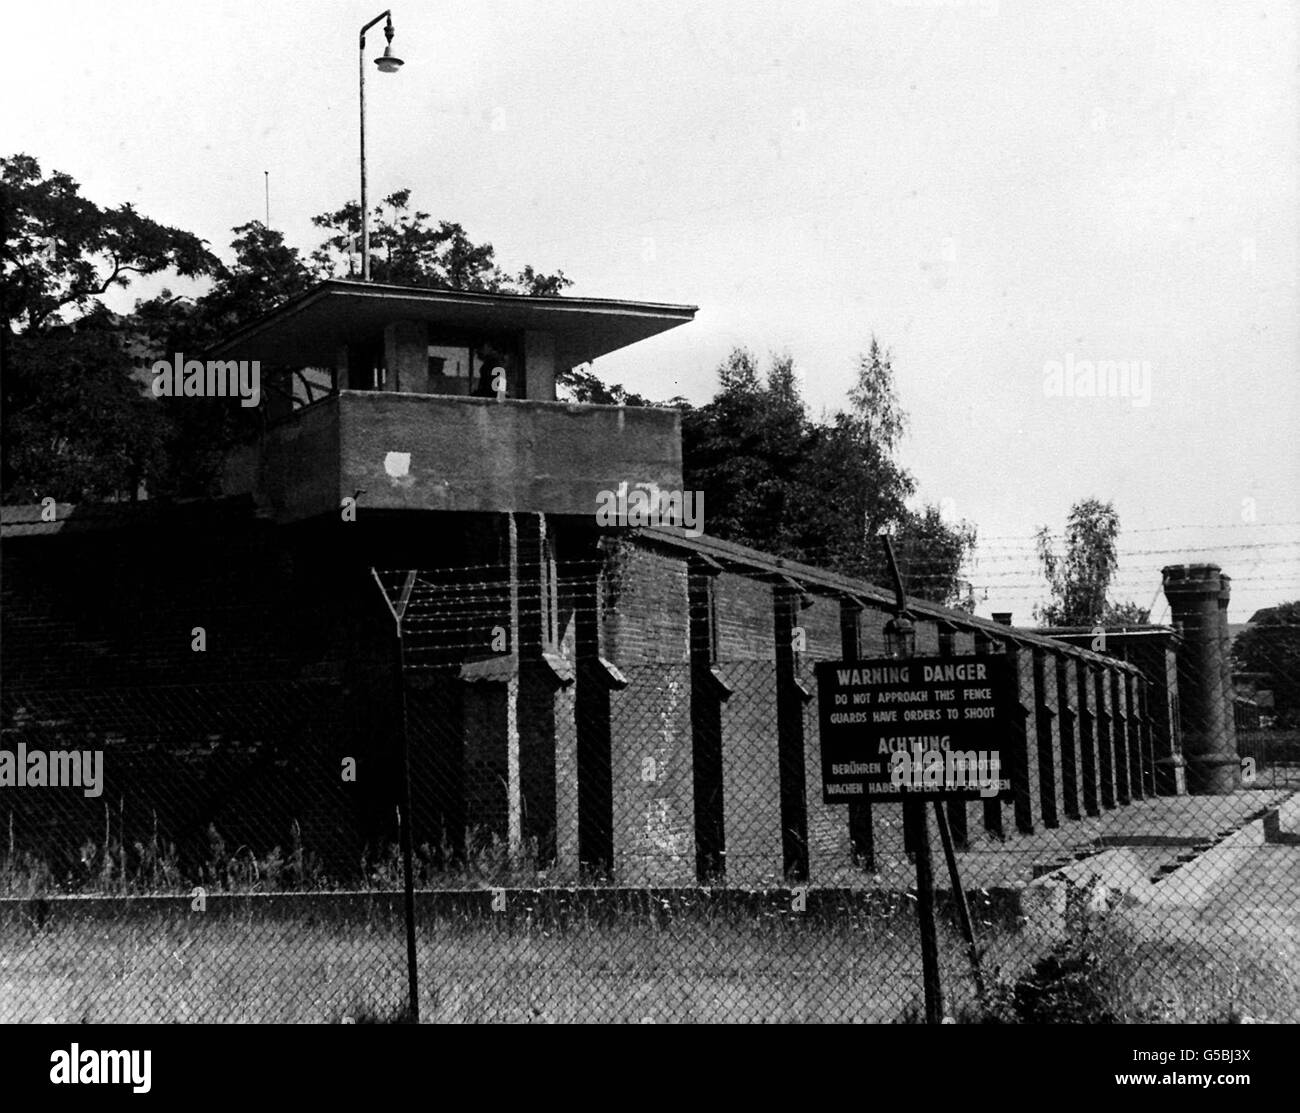 PRIGIONE DI SPANDAU 1984: Una delle sei torri di guardia che si trovano intorno alla prigione di Spandau nel settore britannico di Berlino Ovest, Germania. La prigione ospita l'ex vice di Adolf Hitler, Rudolf Hess. Foto Stock